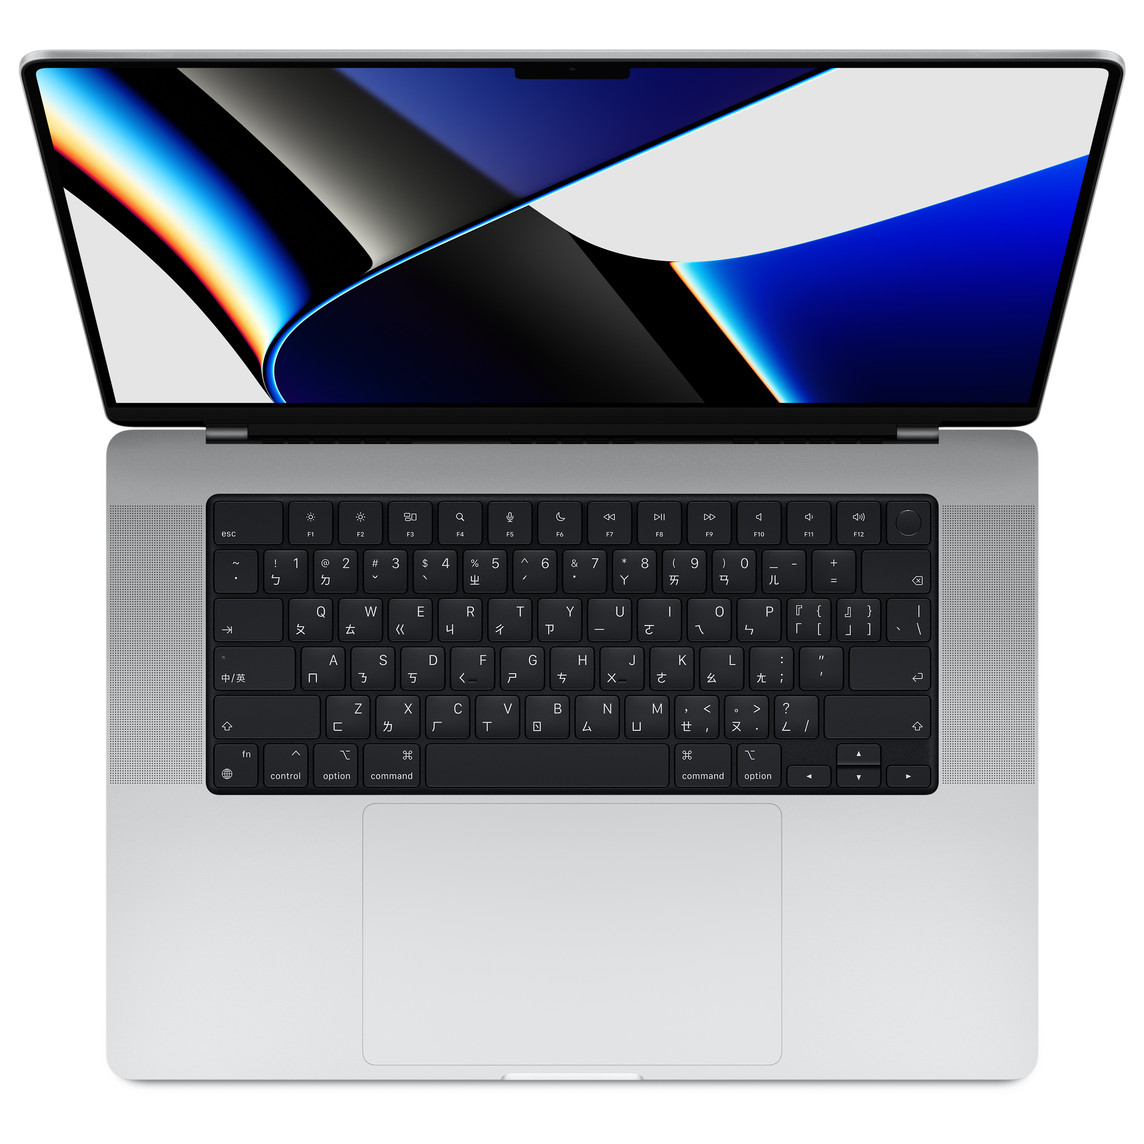 打開的銀色 MacBook Pro 俯視圖，展示顯示器、配備全高功能鍵列和圓形 Touch ID 按鈕的鍵盤，以及觸控式軌跡板。